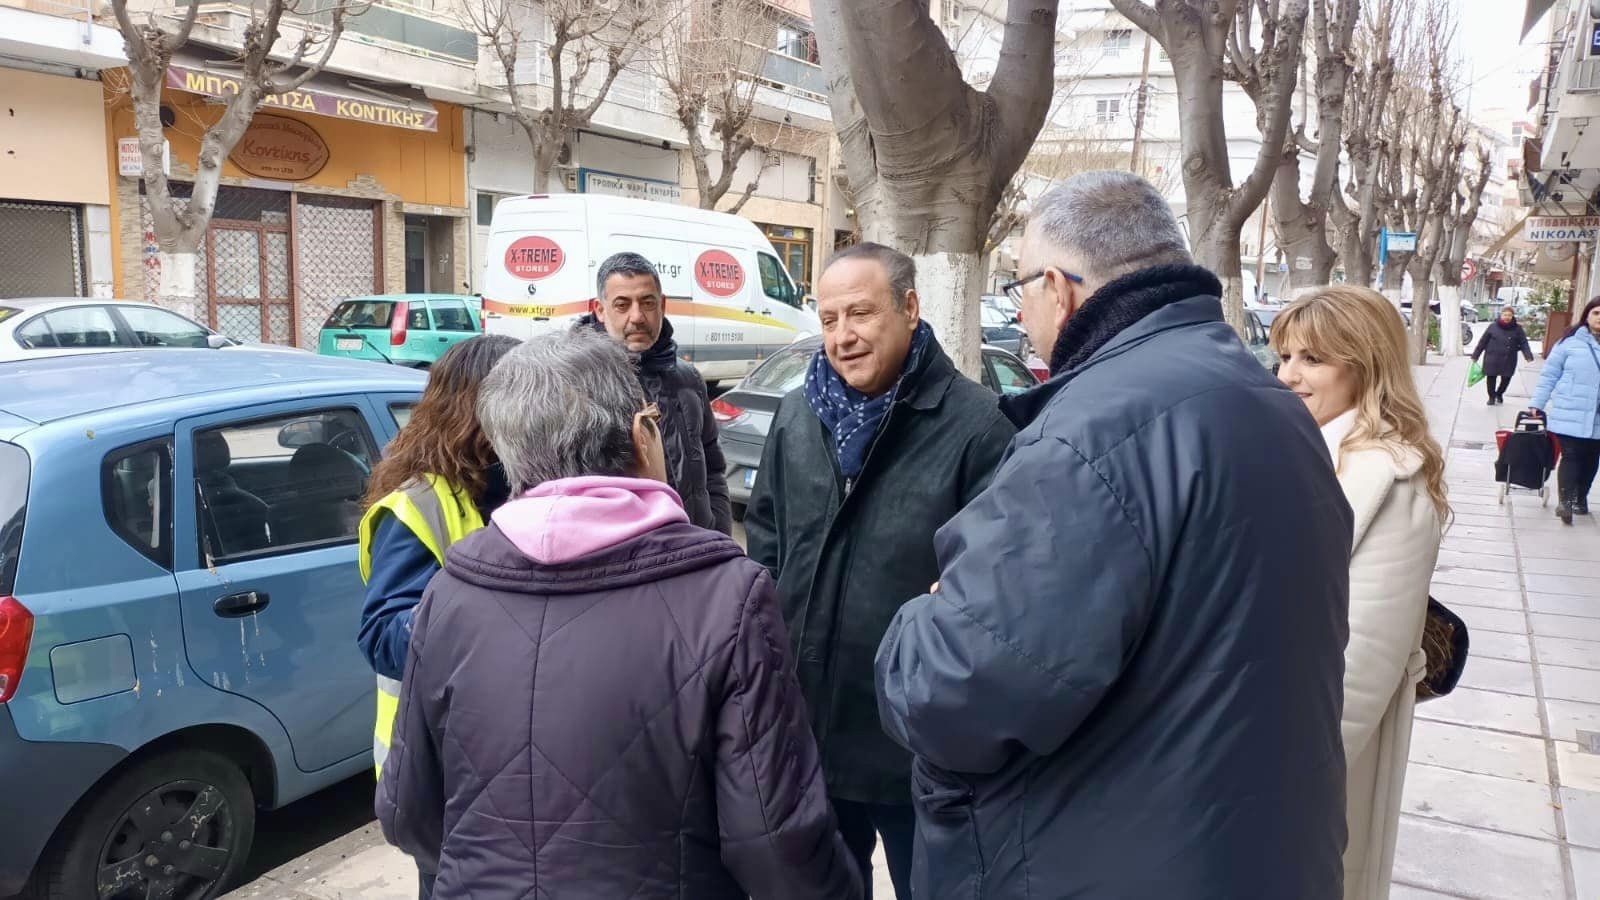 Αγγελούδης για το παρεμπόριο στη Θεσσαλονίκη: «Δεν μπορούμε να το επιτρέψουμε να συνεχιστεί»